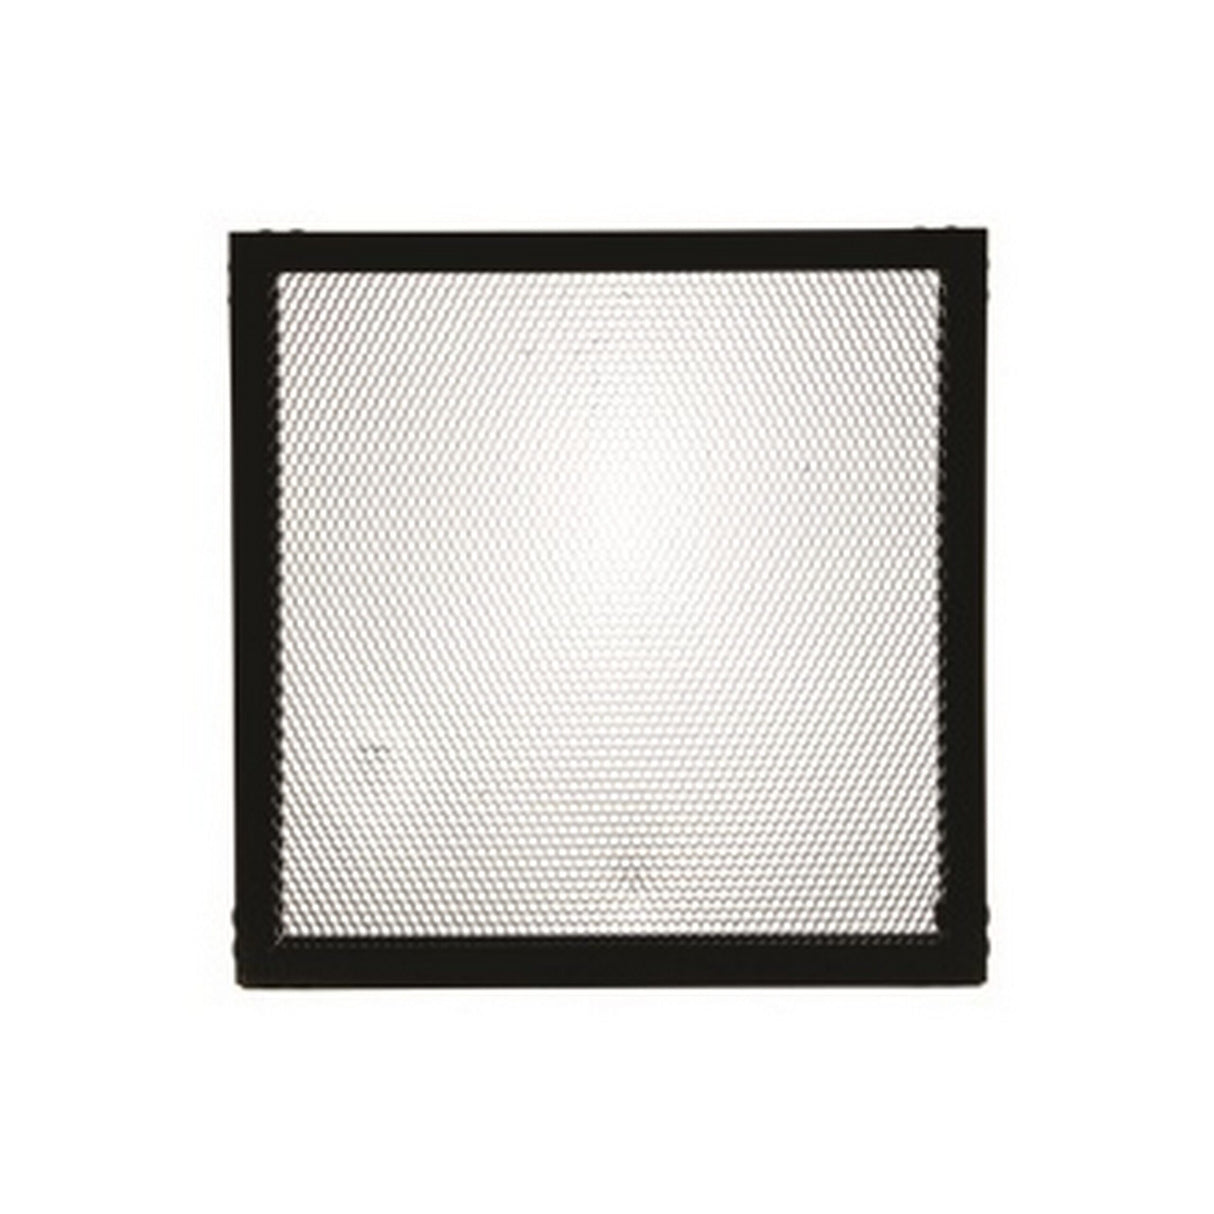 Litepanels 900-3020 1 x 1 Honeycomb Grid, 90 Degree